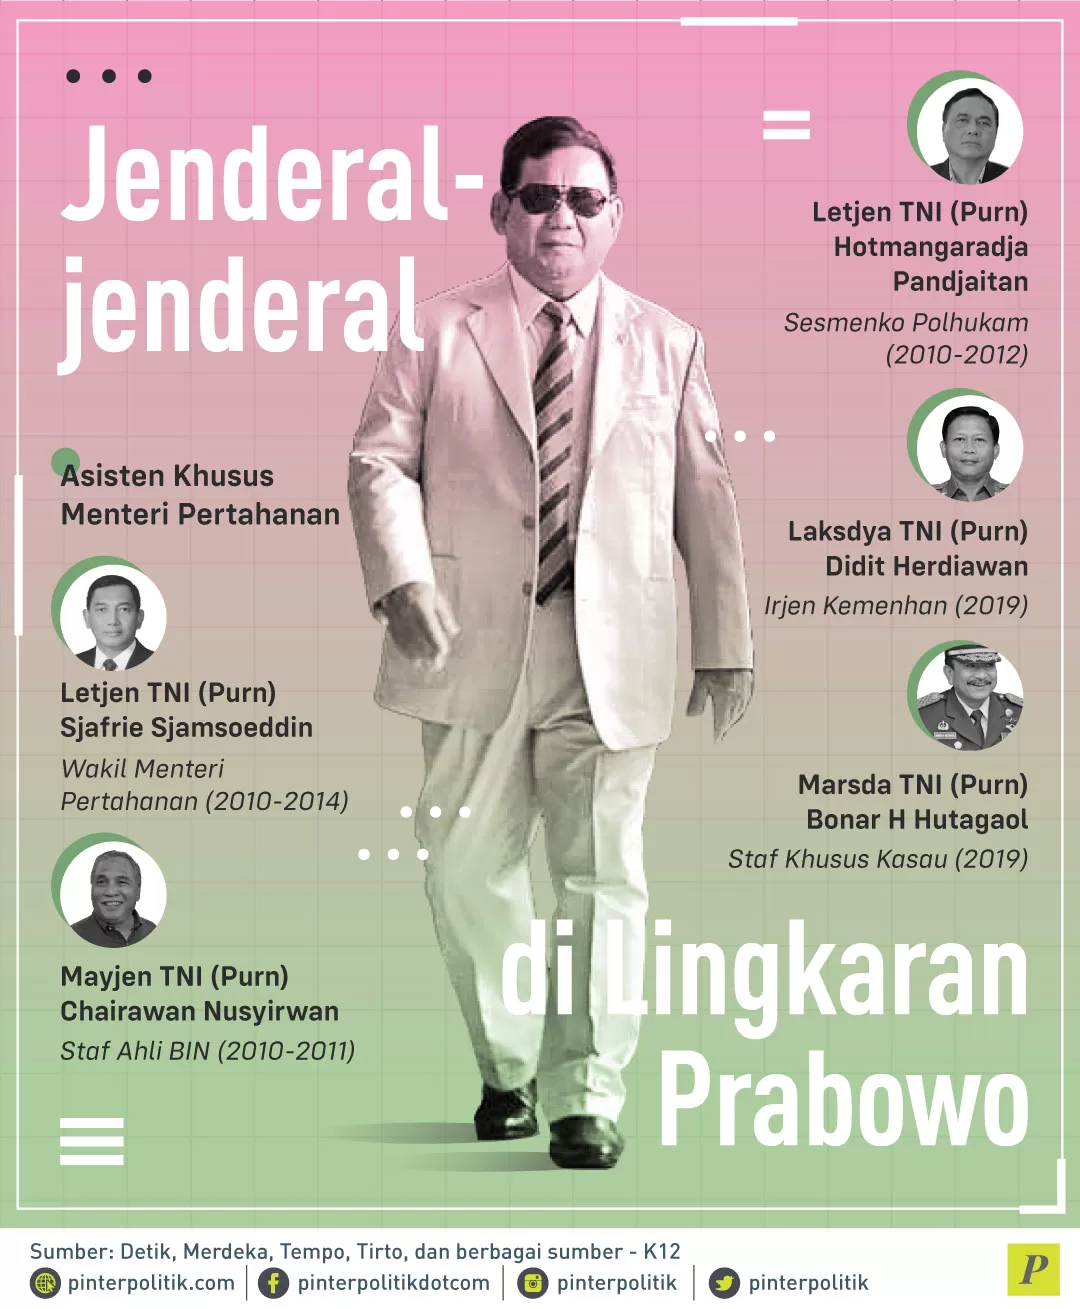 Prabowo Subianto mengangkat asisten khusus menteri